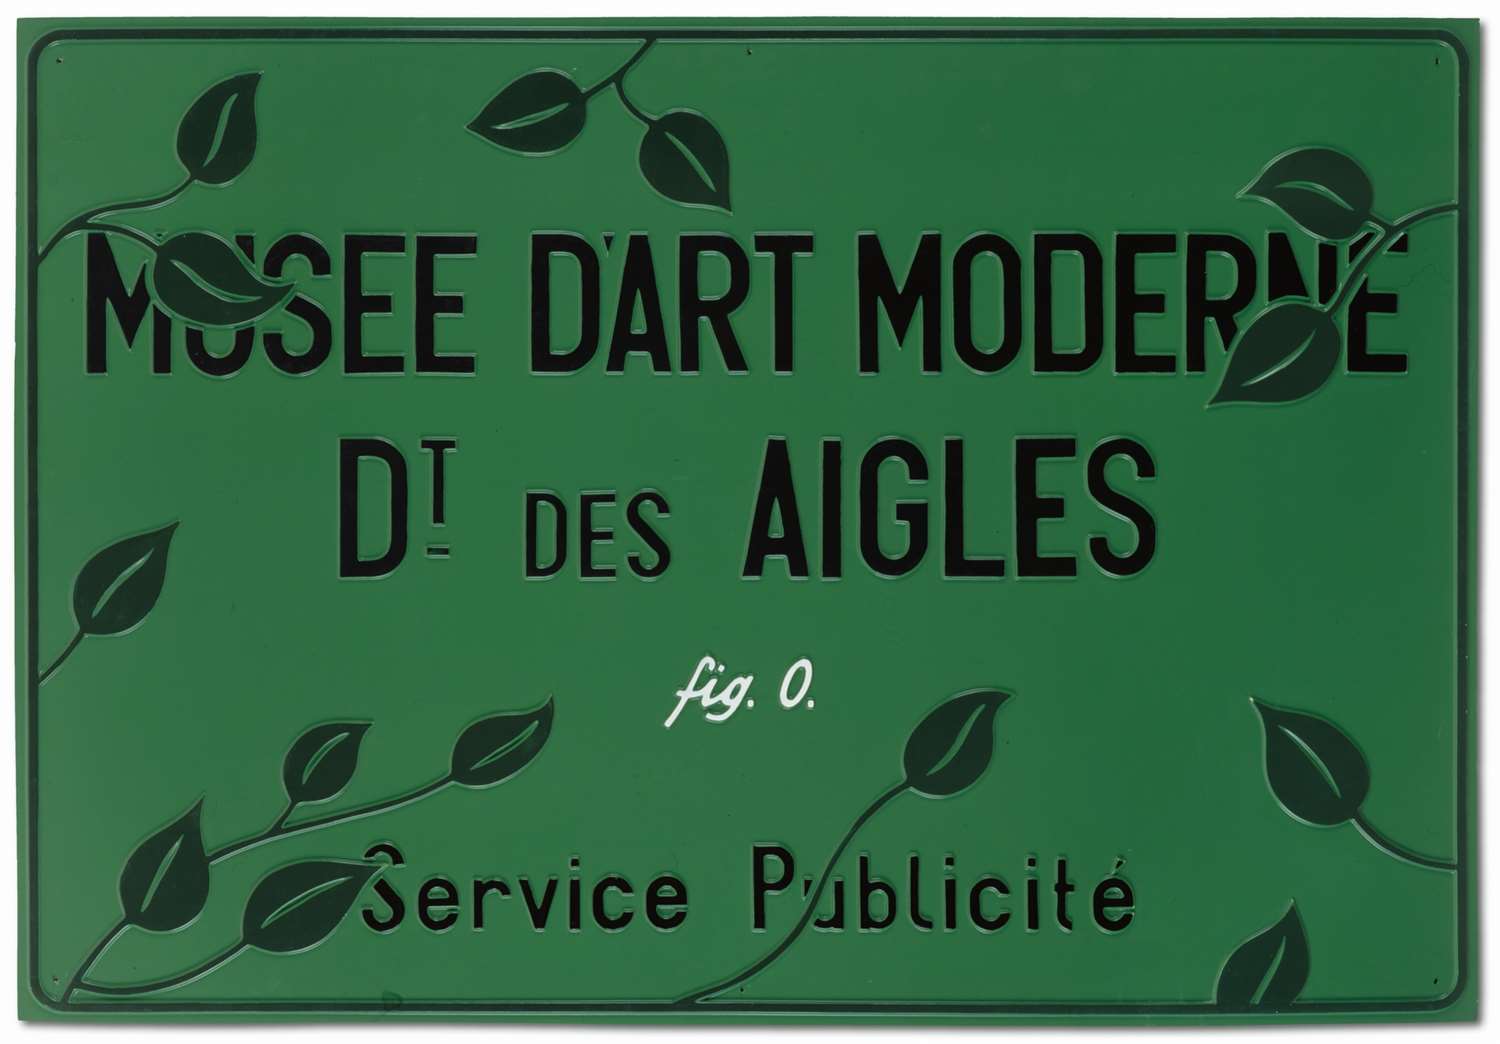 Musée d’Art Moderne, Département des Aigles, Section Publicité, 1971. Photograph by MASI Lugano.